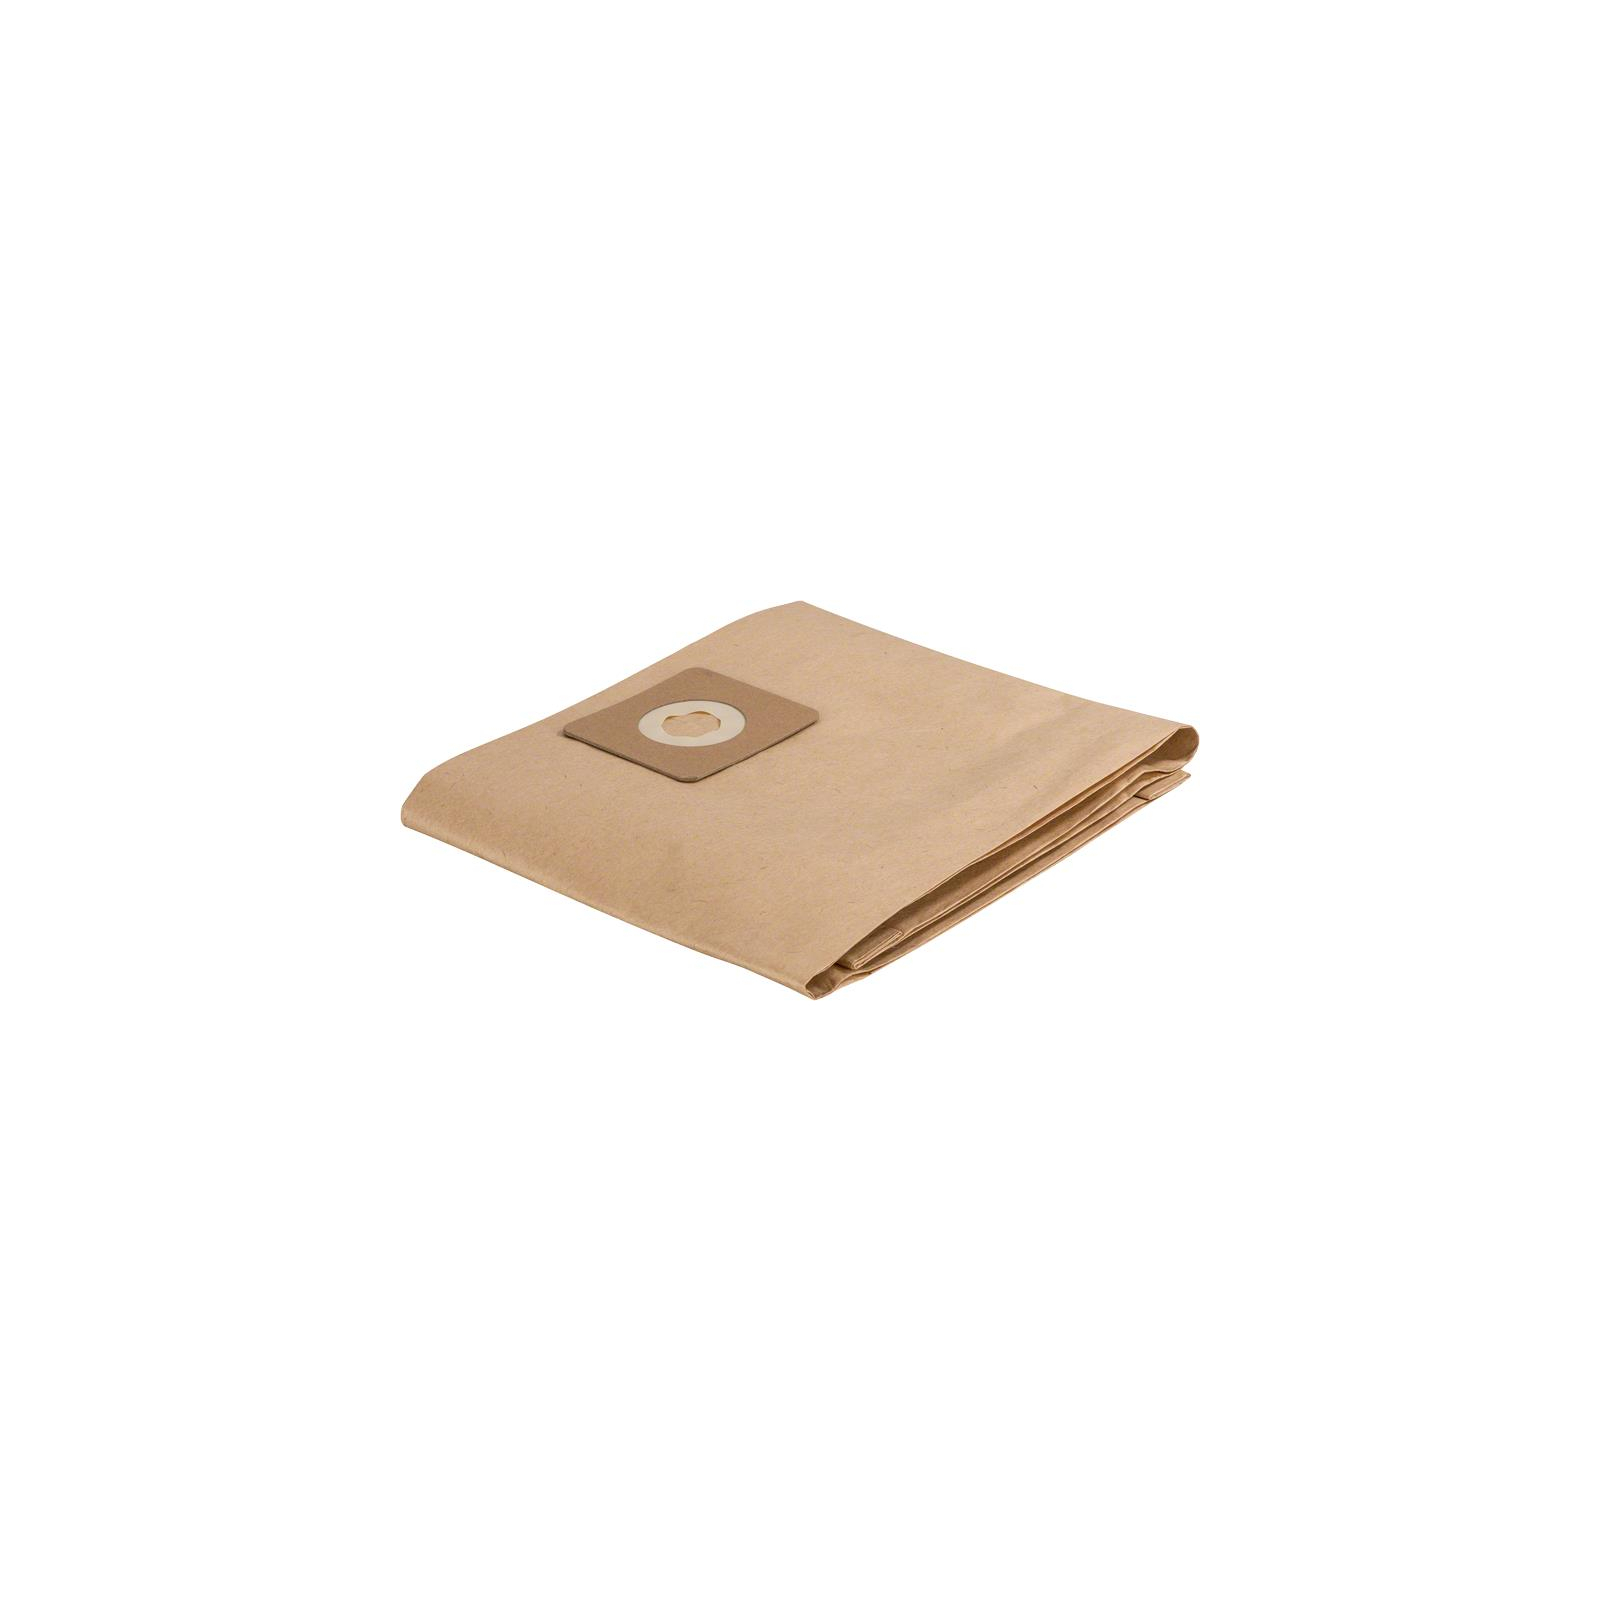 Мішок для пилососу Bosch мешок для VAC 20 бумажный, 5шт (2.609.256.F33)